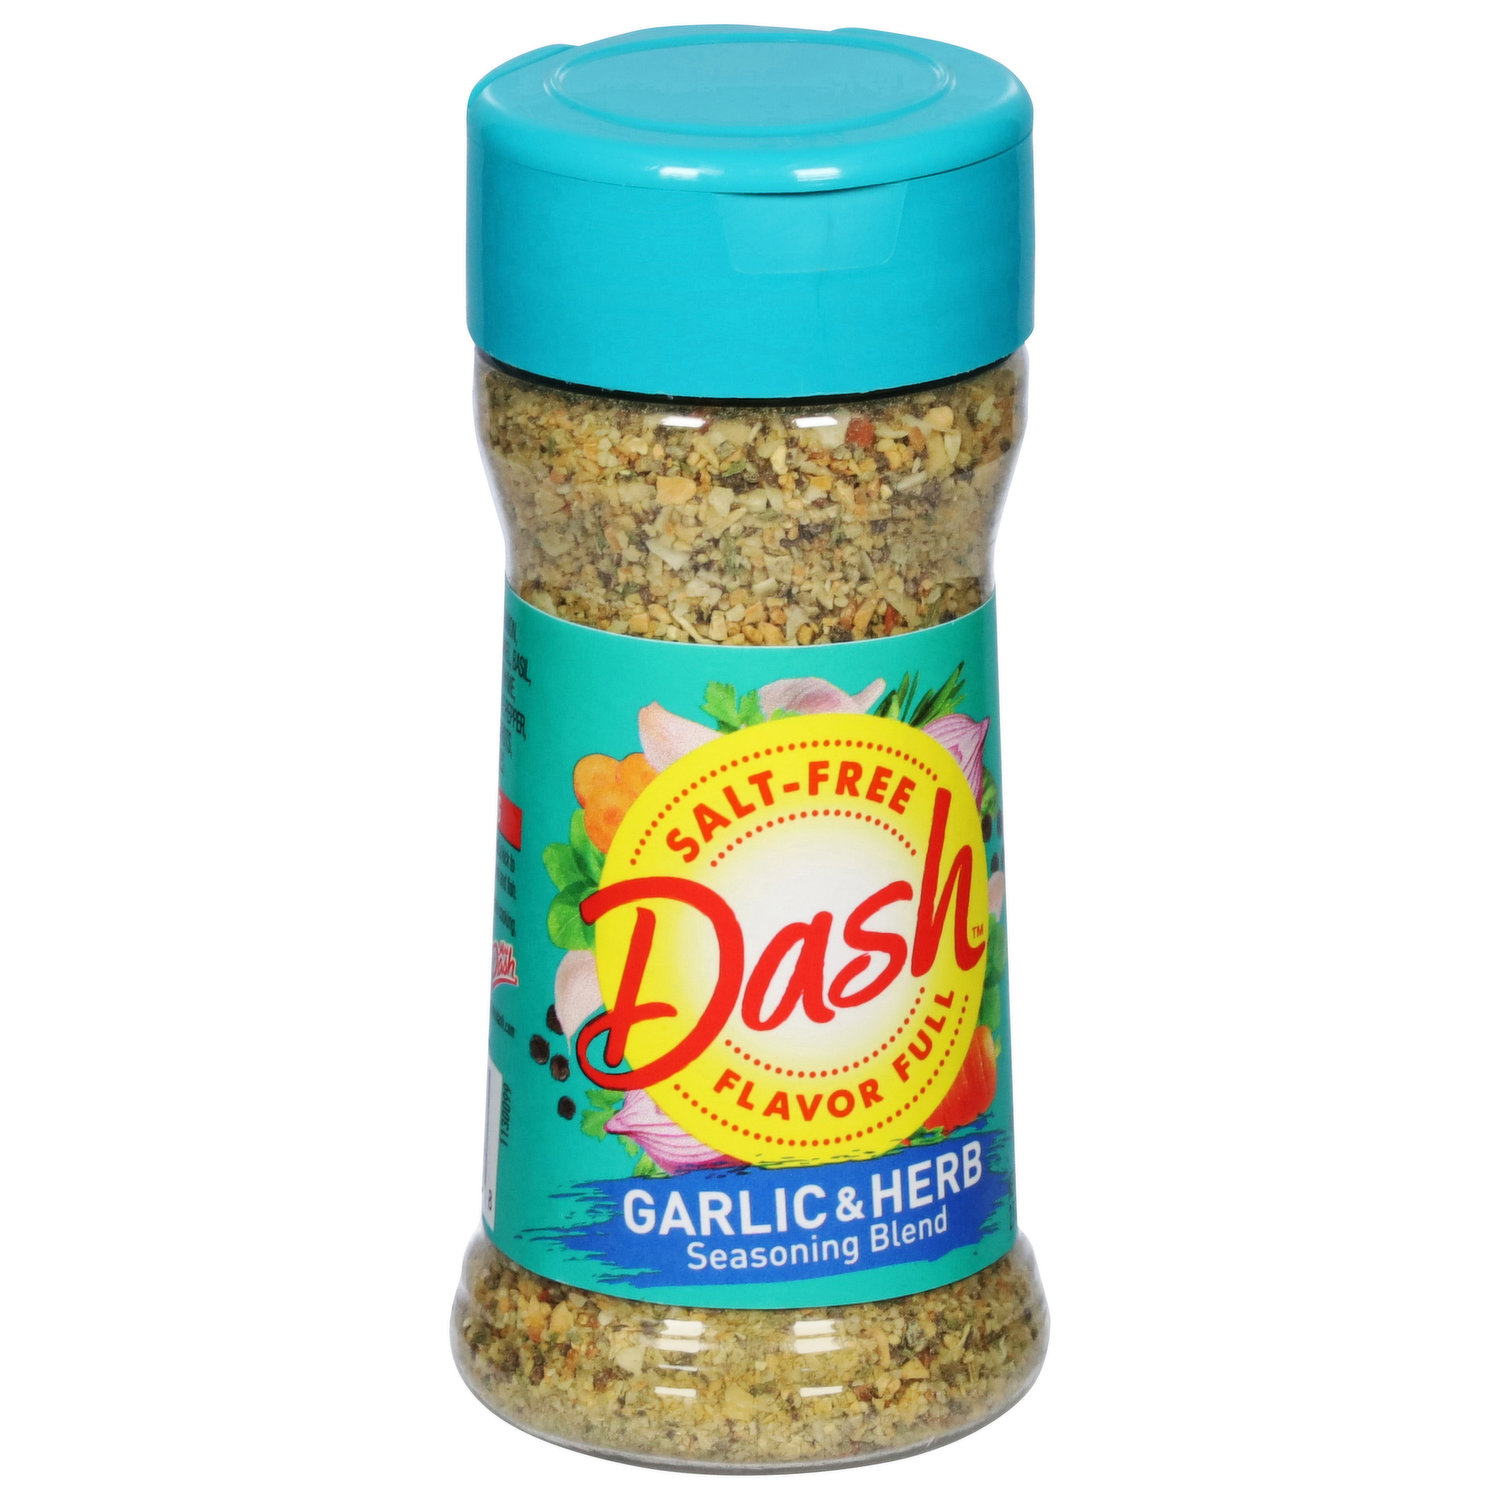 Mrs. Dash Garlic & Herb Seasoning Blend, 2.5 OZ - Kroger